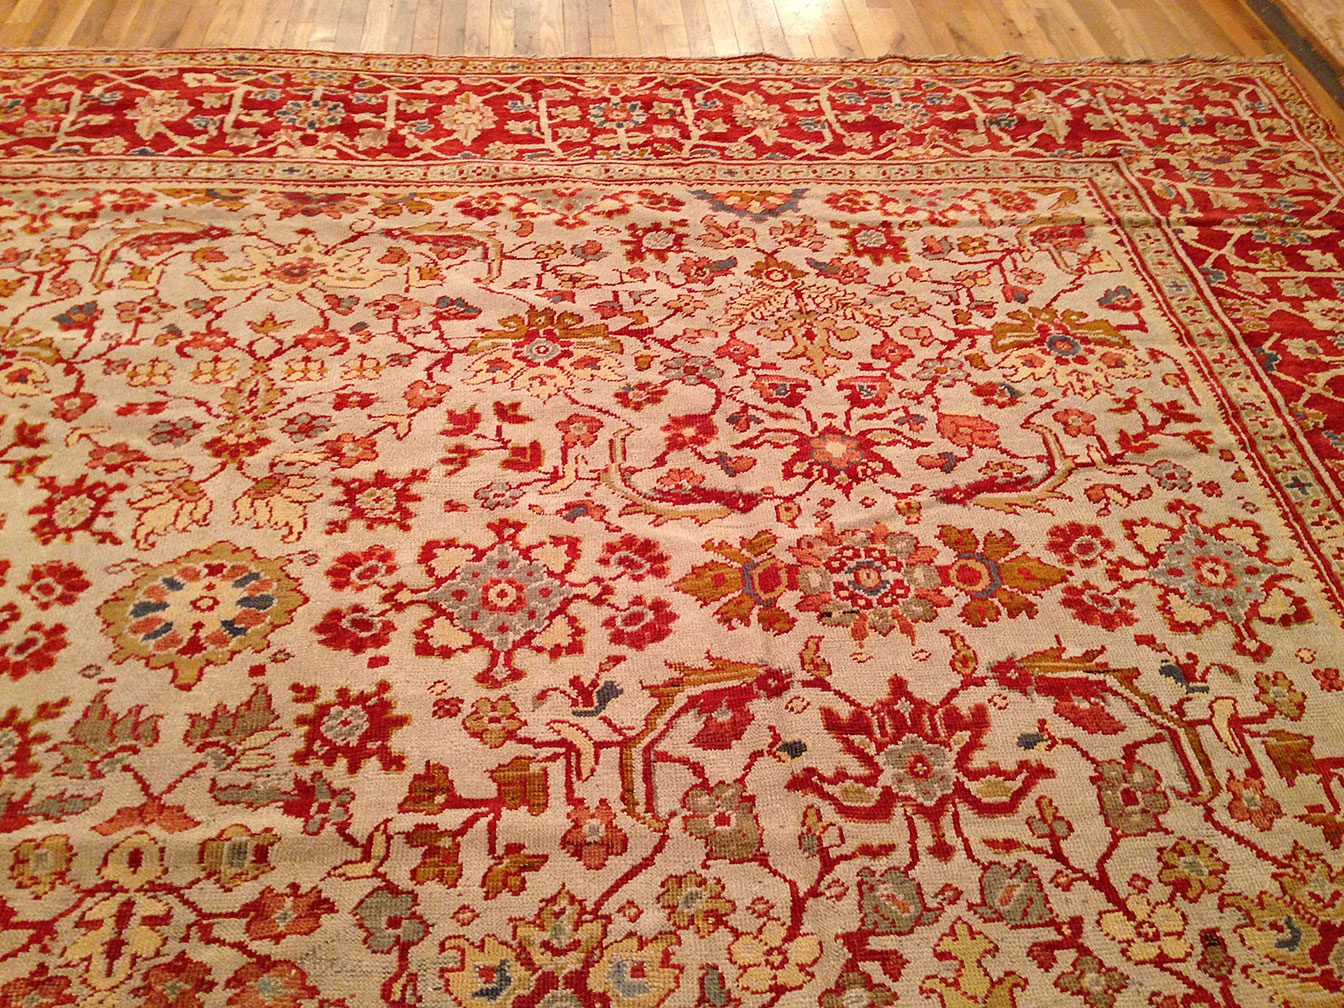 Antique mahal Carpet - # 3622